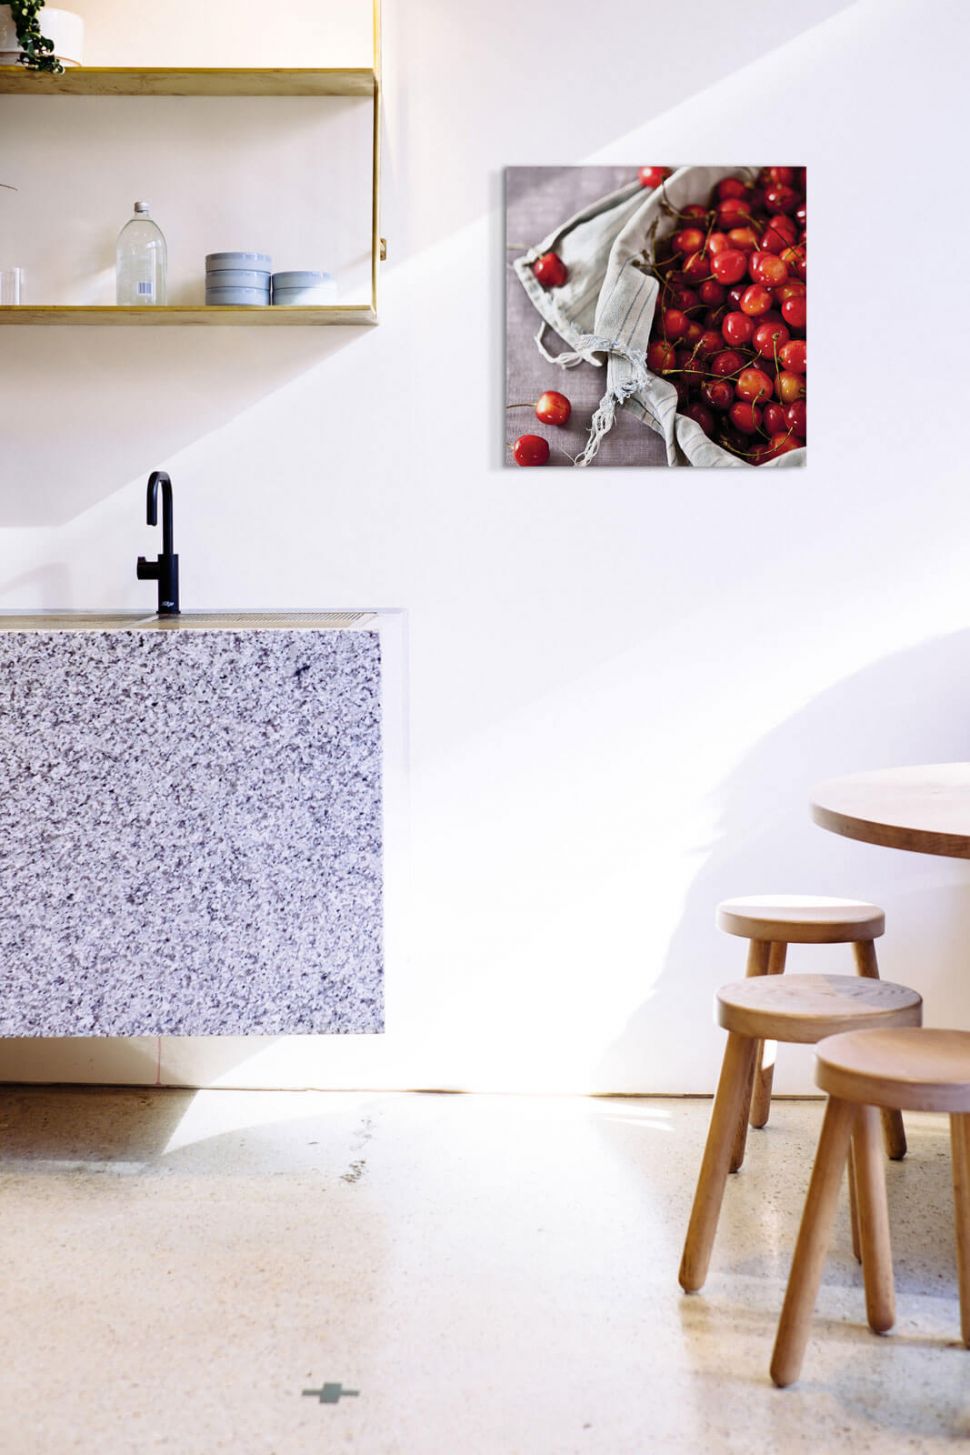 Obraz na płótnie Kosz pełen wiśni powieszony w kuchni na białej ścianie